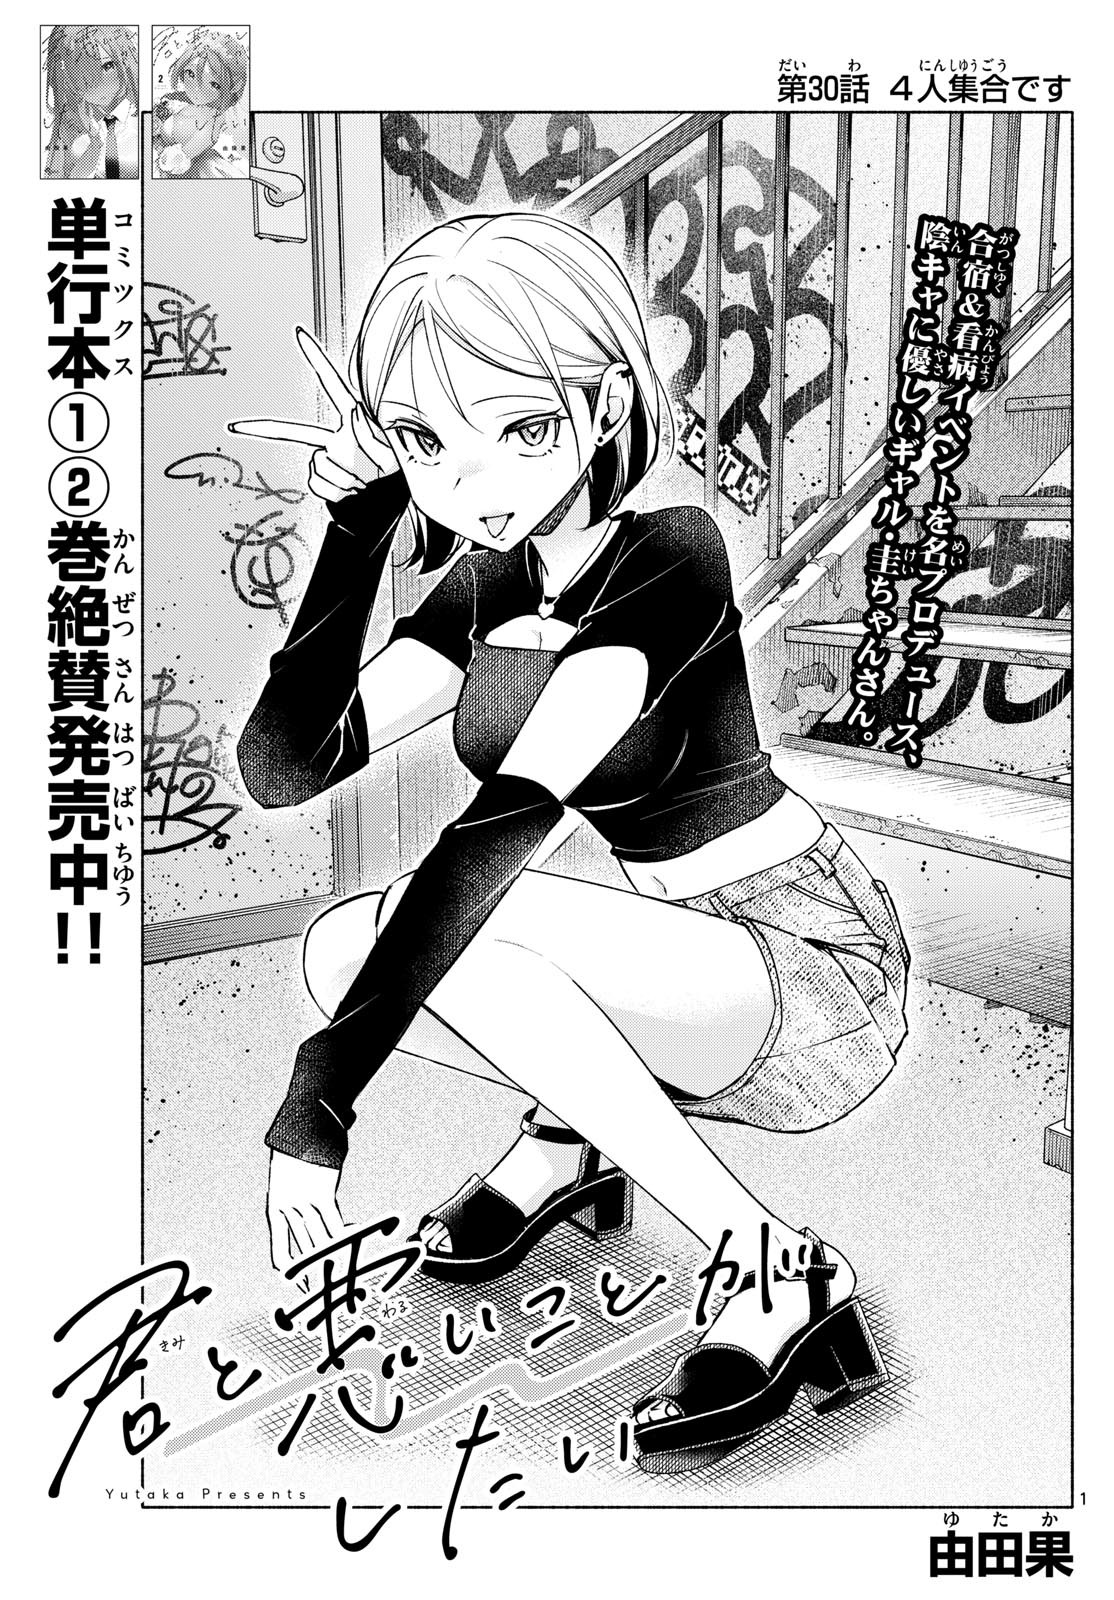 Kimi to Warui Koto ga Shitai - Chapter 030 - Page 1